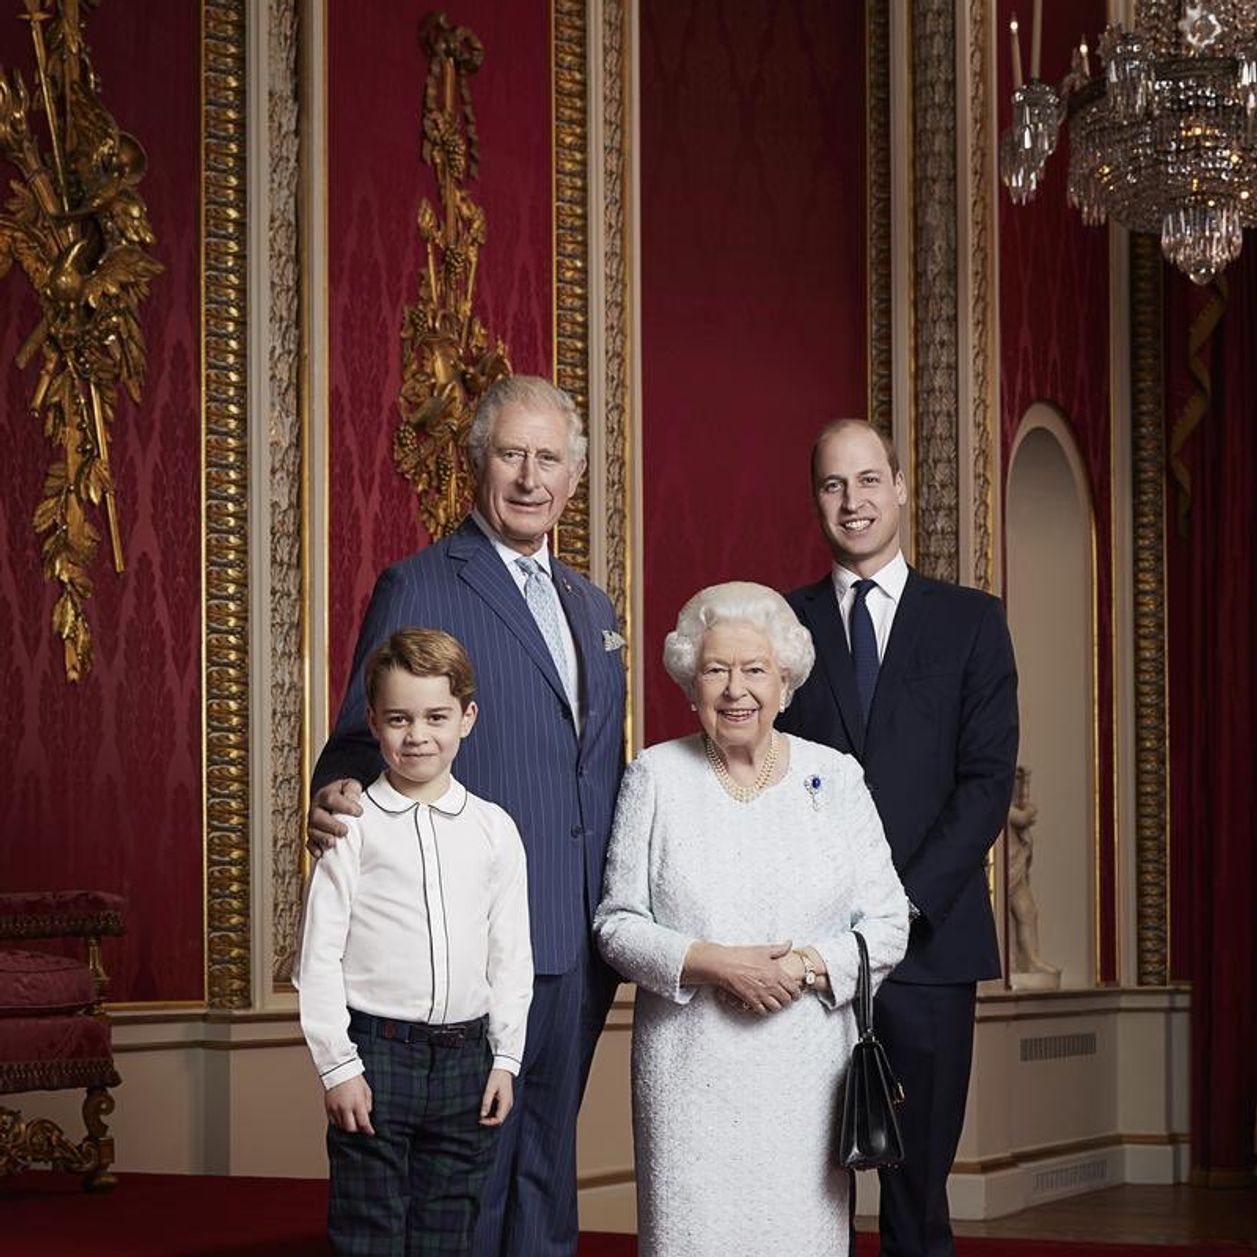 La reine Elizabeth II pose avec ses successeurs pour commencer l'année 2020 en beauté